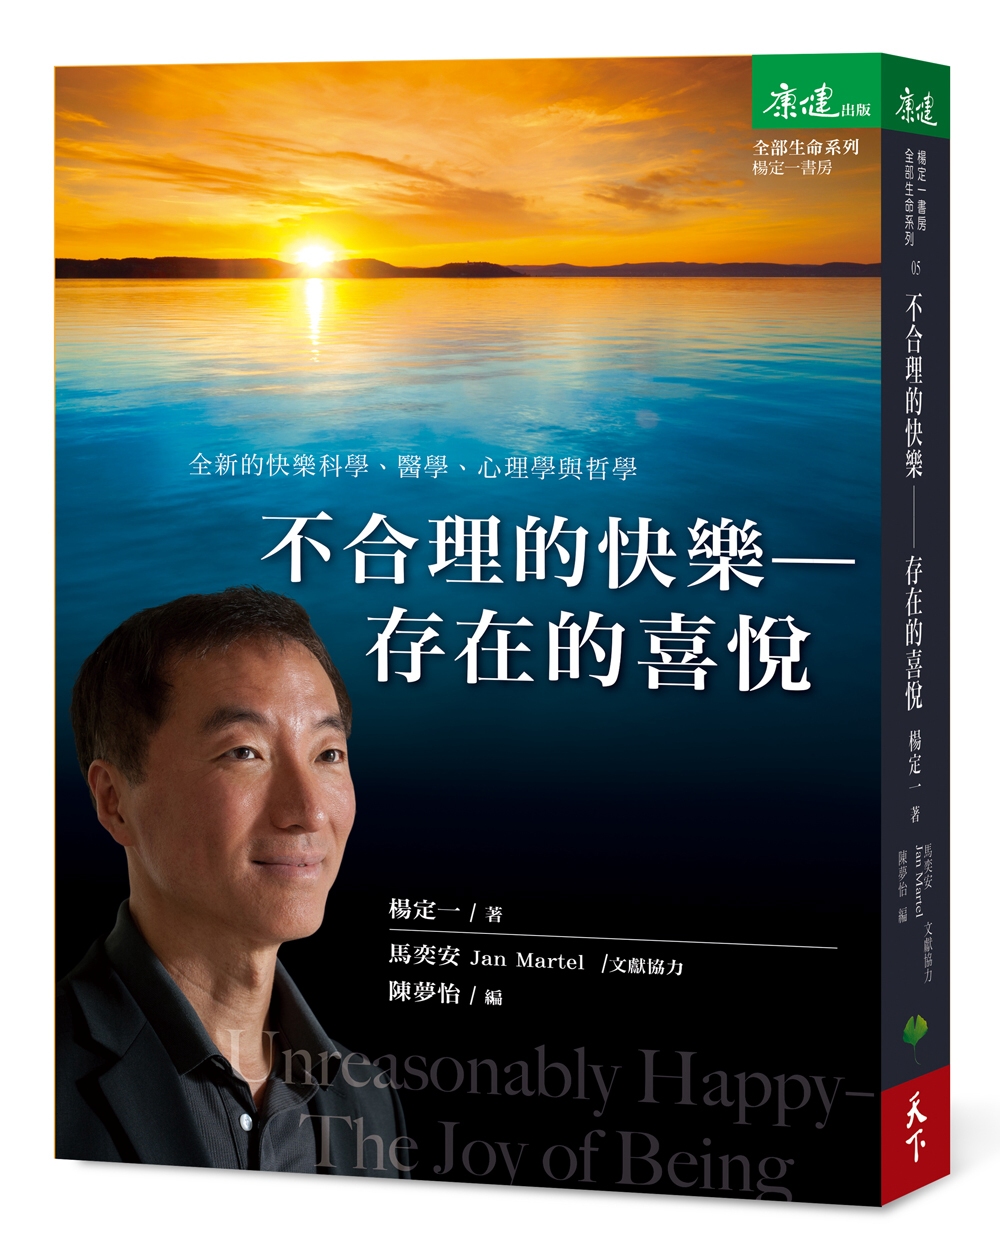 書名：不合理的快樂：存在的喜悅，語言：繁體中文，ISBN：9789869461733，頁數：384，出版社：天下生活，作者：楊定一，出版日期：2017/05/24，類別：心理勵志